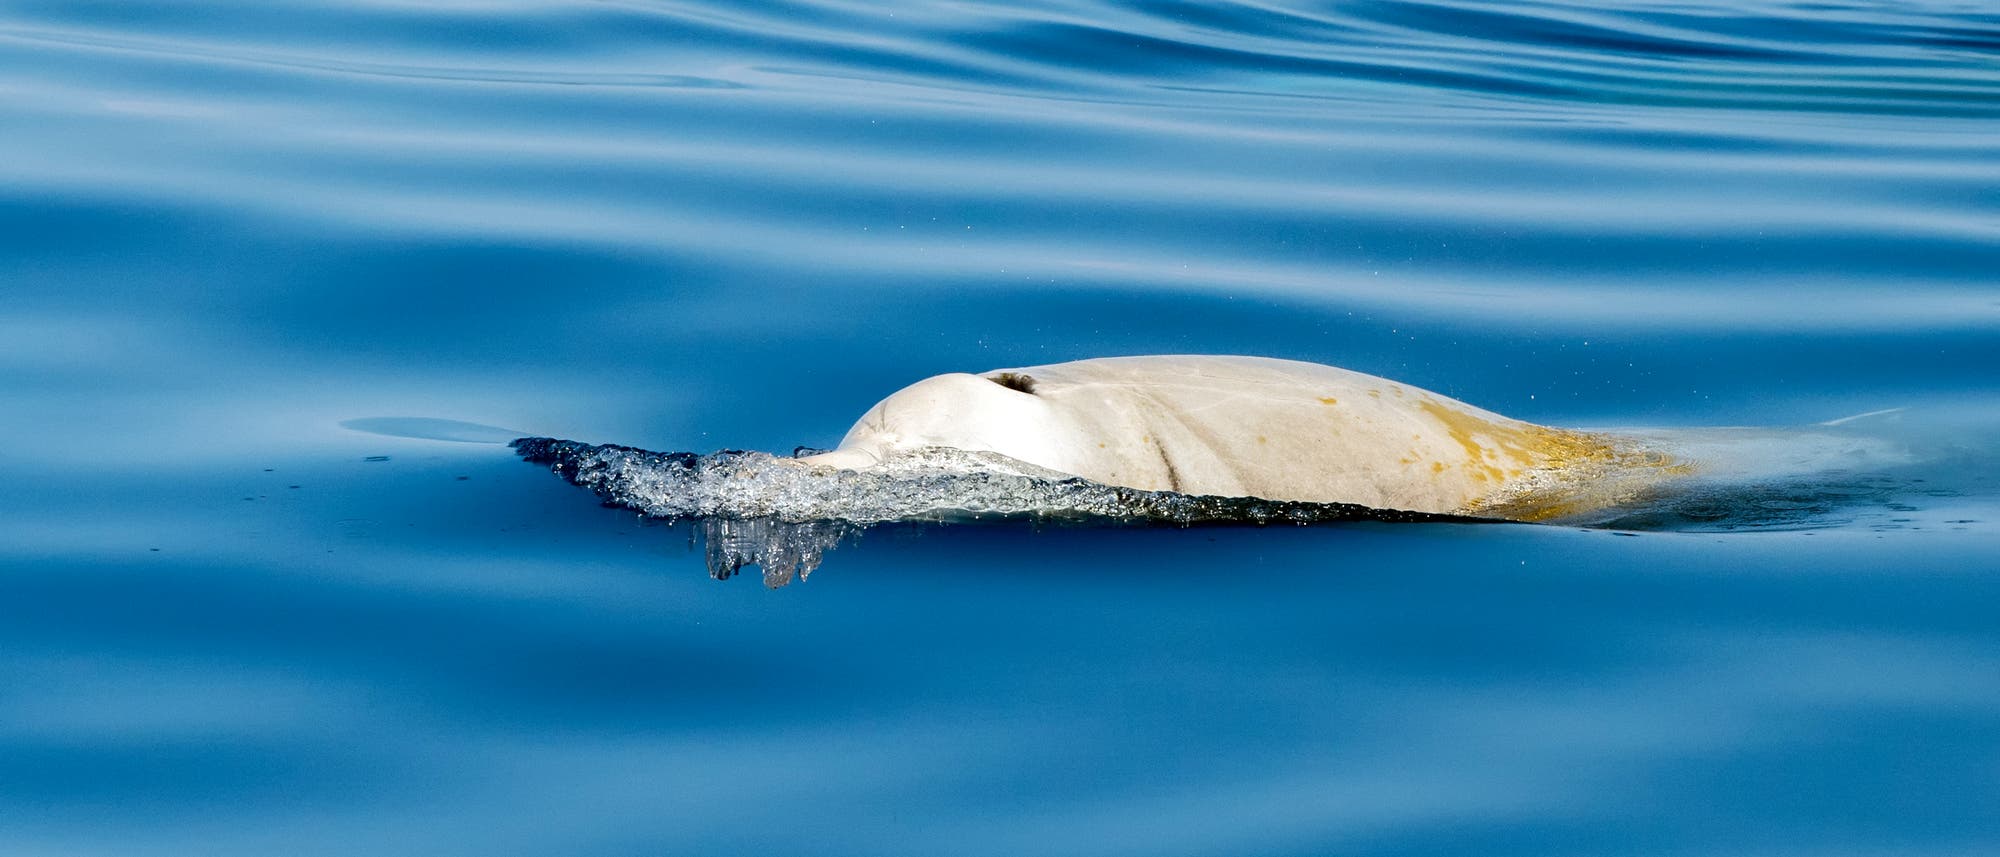 Der Cuvier-Schnabelwal ist die am weitesten verbreitete Art der Schnabelwale.